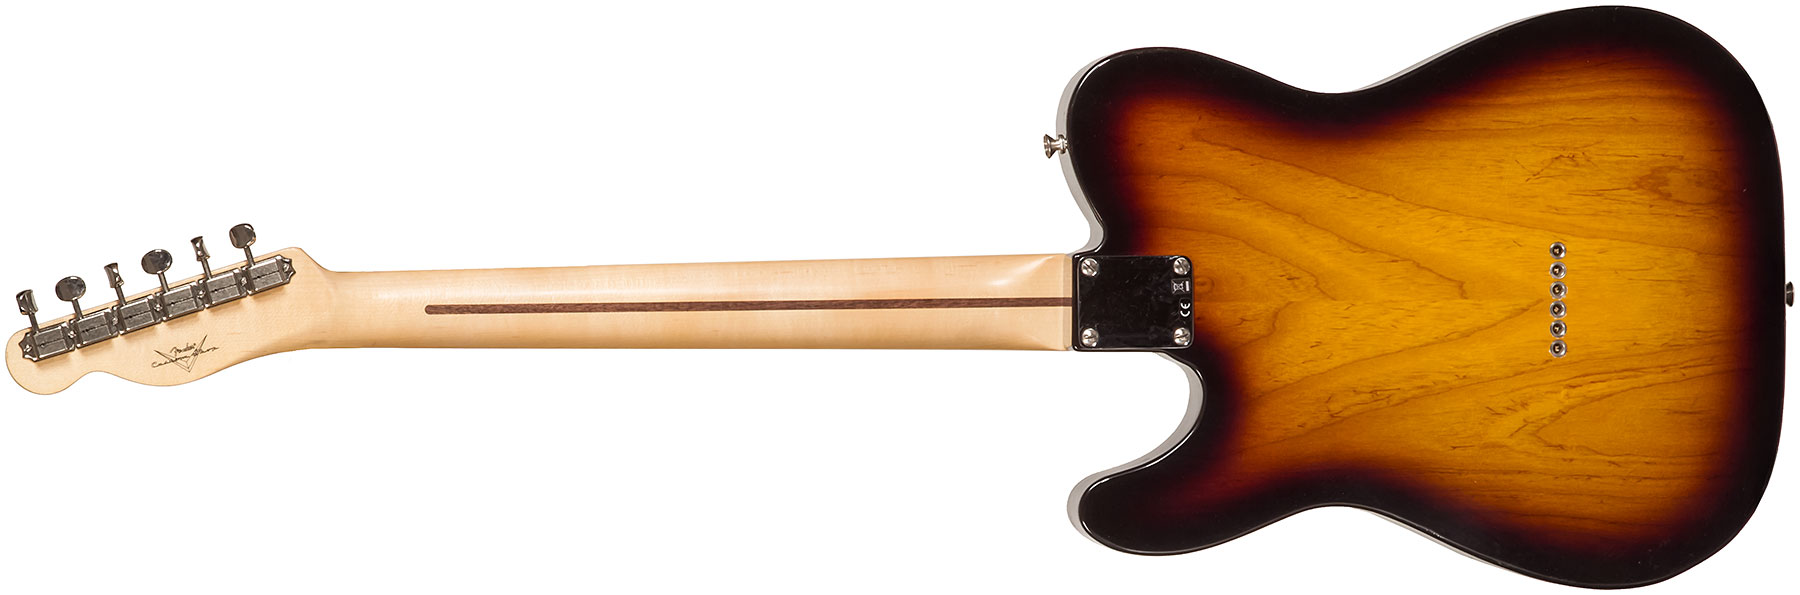 Fender Custom Shop Tele Thinline '50s 2s Ht Mn #r128616 - Closet Classic 2-color Sunburst - Tel shape electric guitar - Variation 1